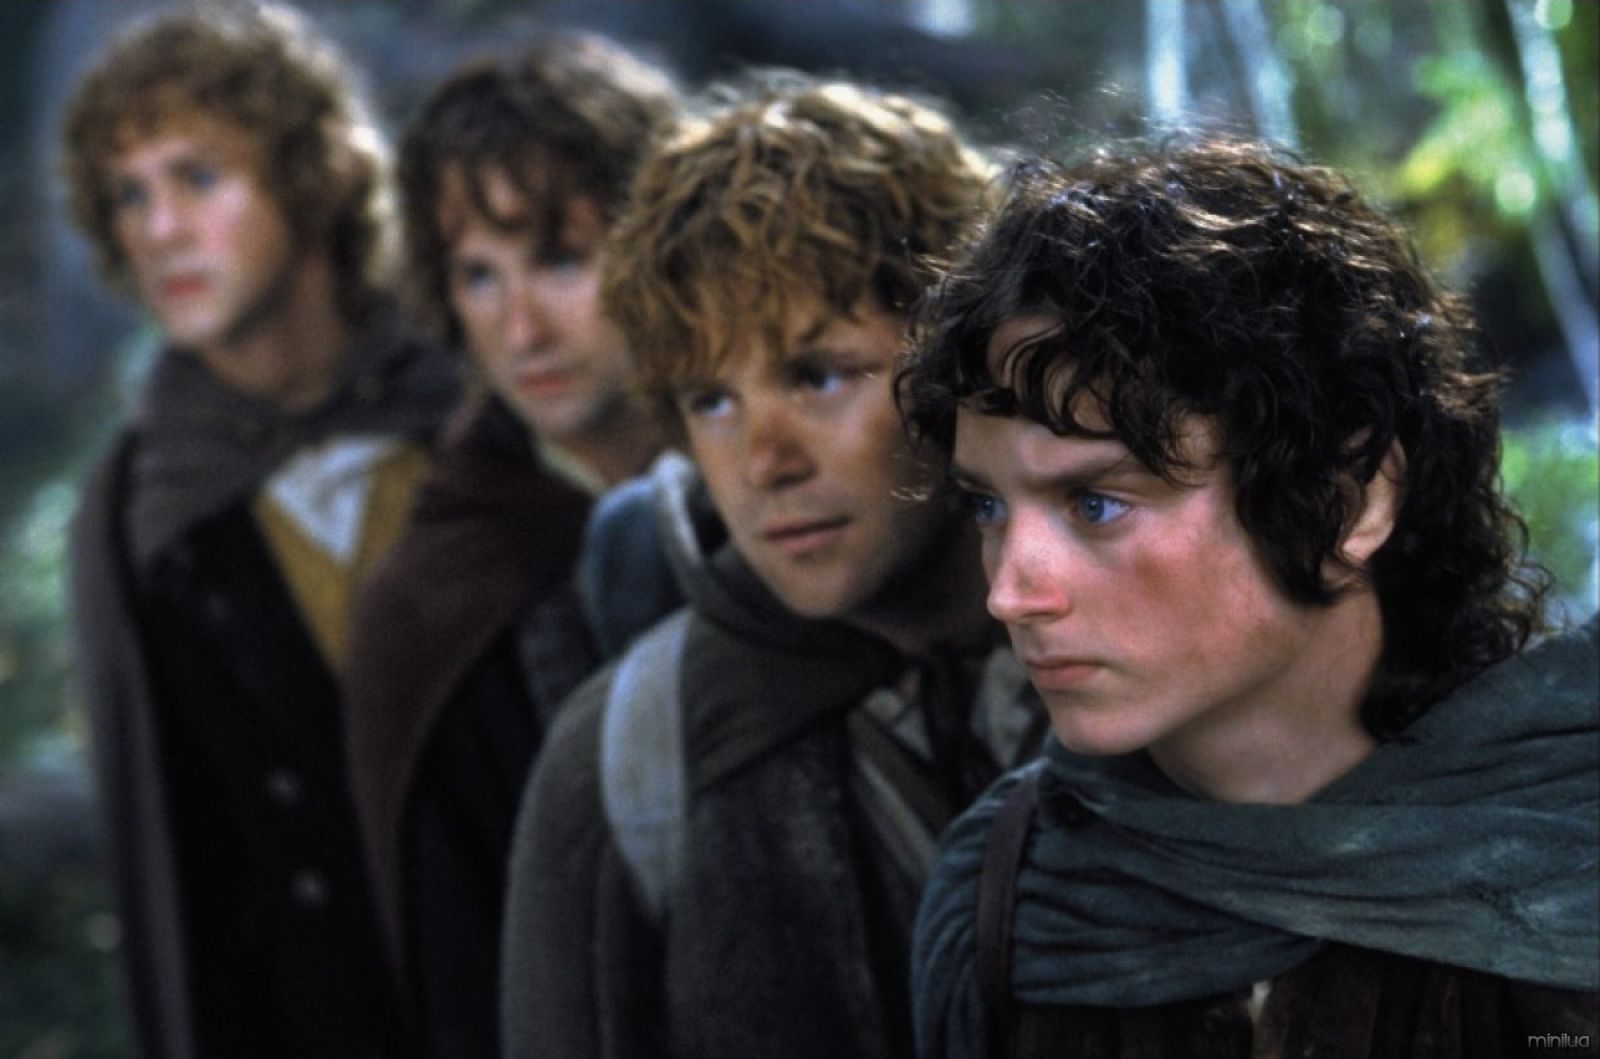 Seres da mitologia que realmente existiram: Hobbits #4 | Minilua